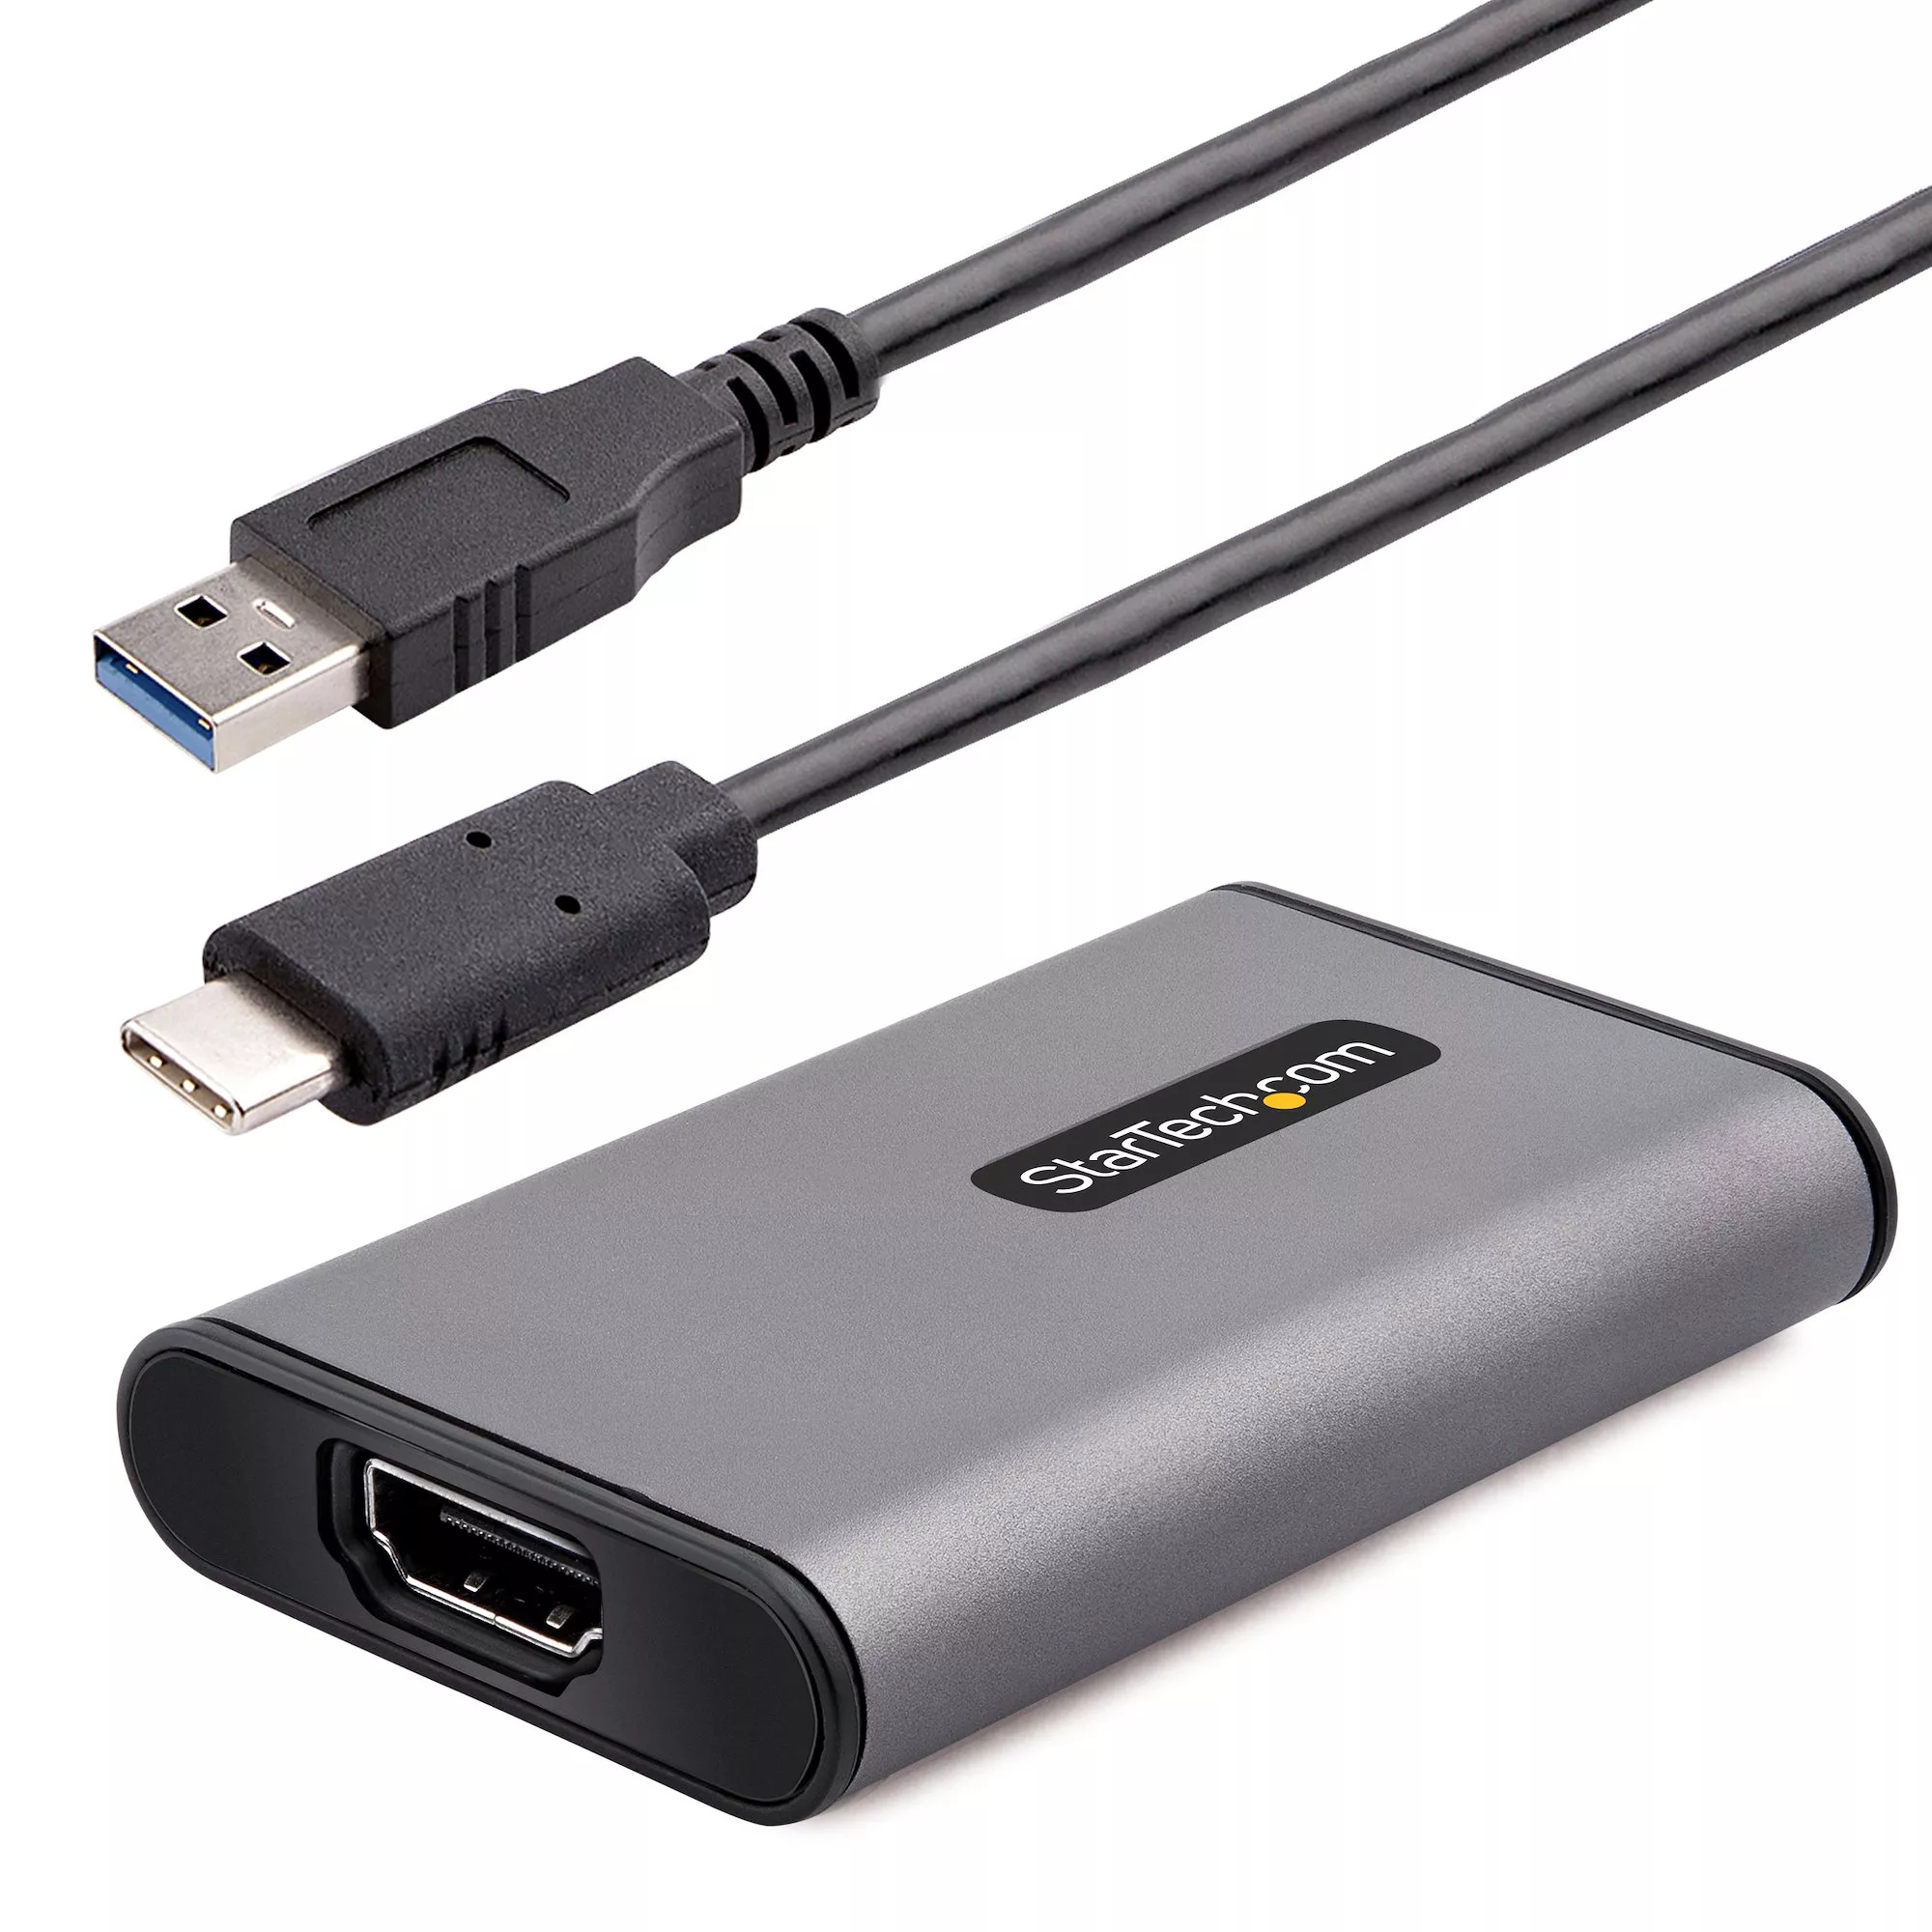 Achat Câble HDMI StarTech.com Capture Vidéo HDMI USB 3.0 - Adaptateur de